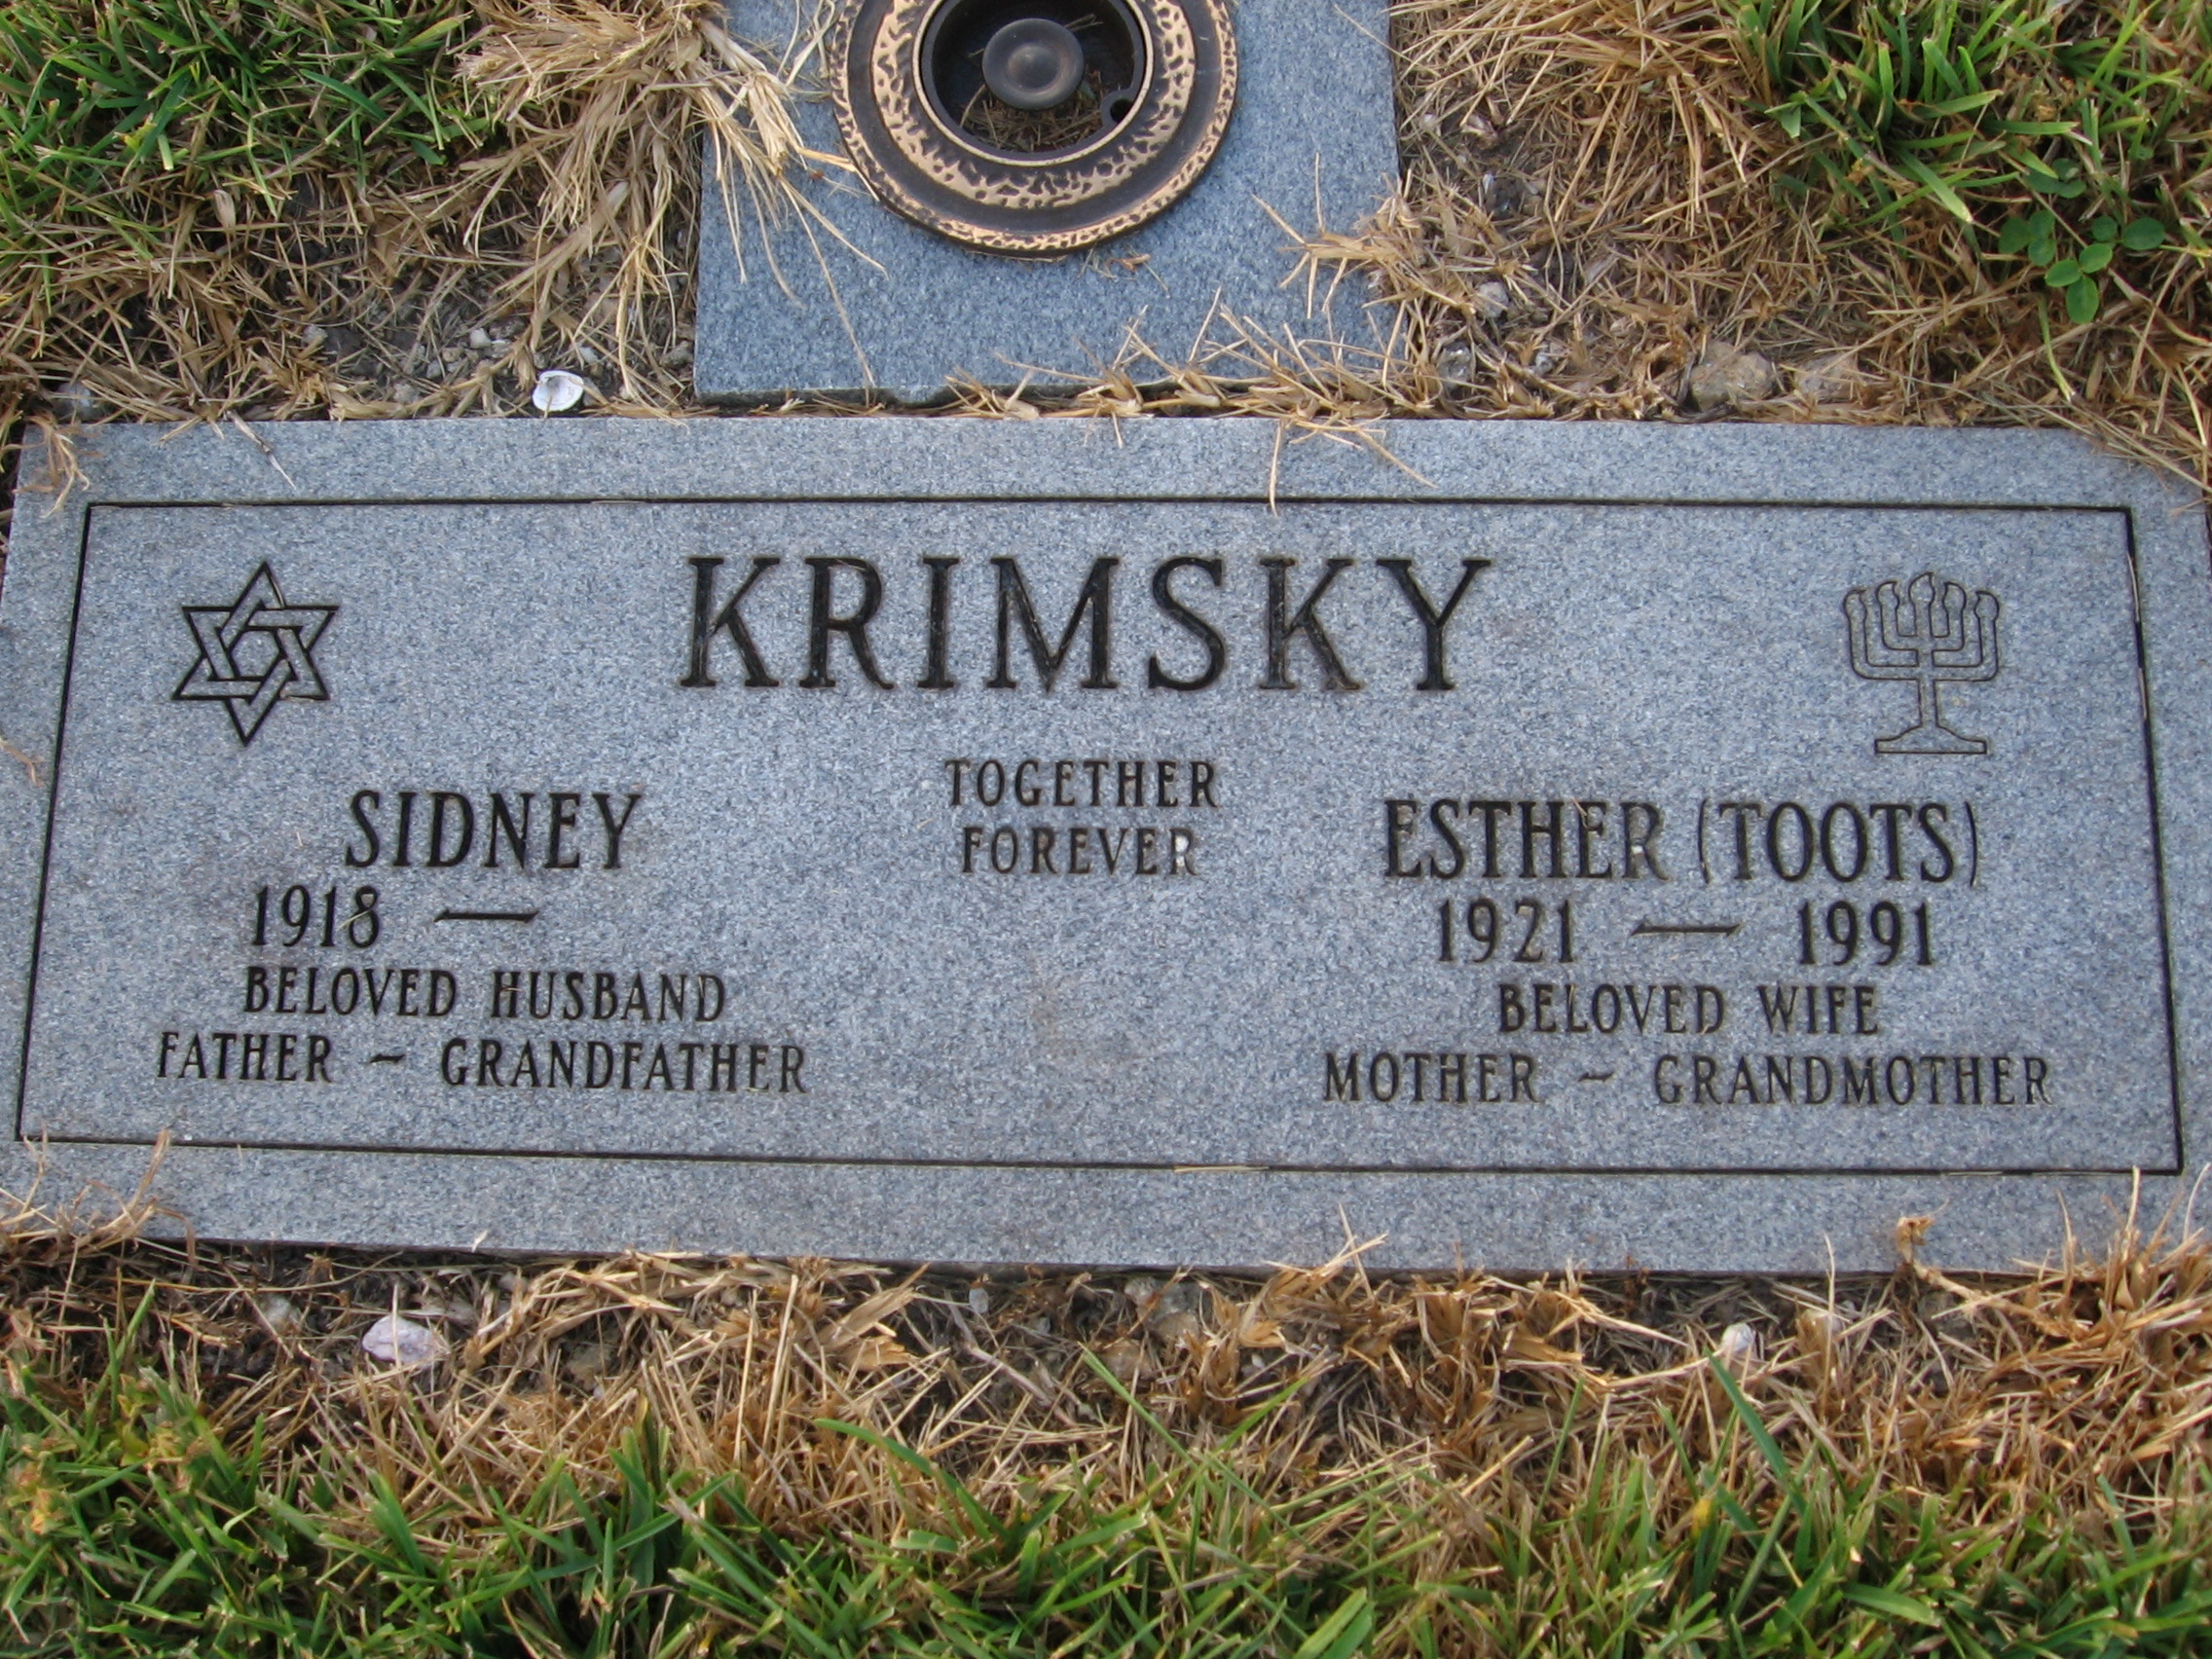 Sidney Krimsky